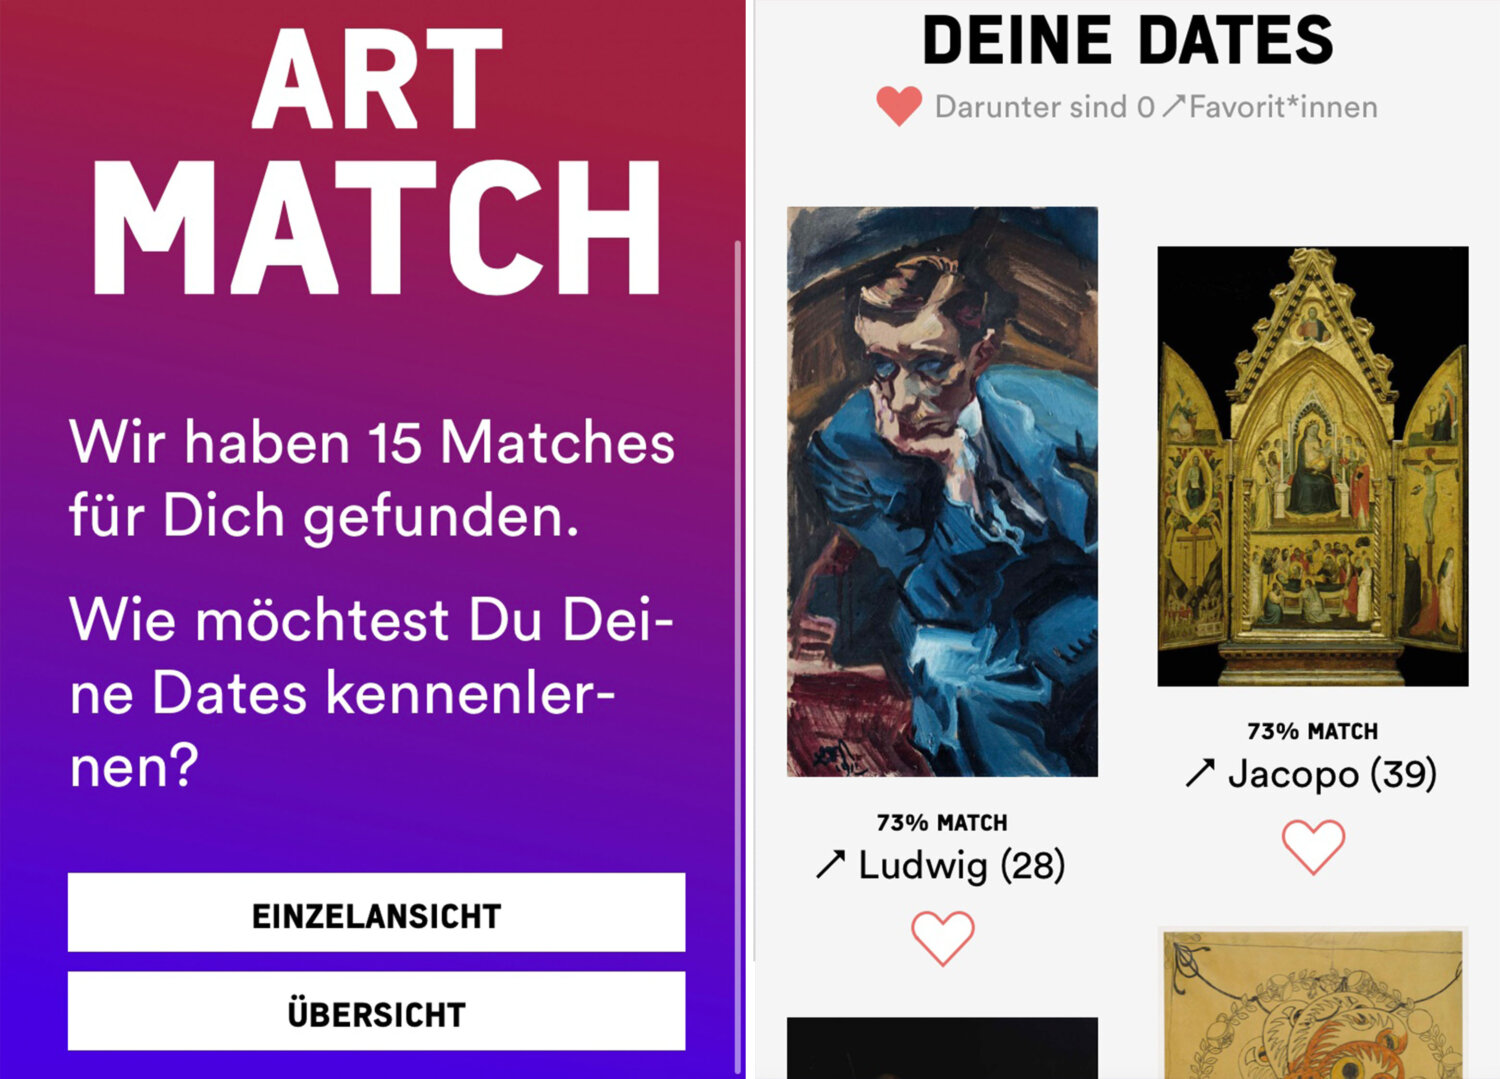 Art Match Kunsthalle Bremen gallerytalk3